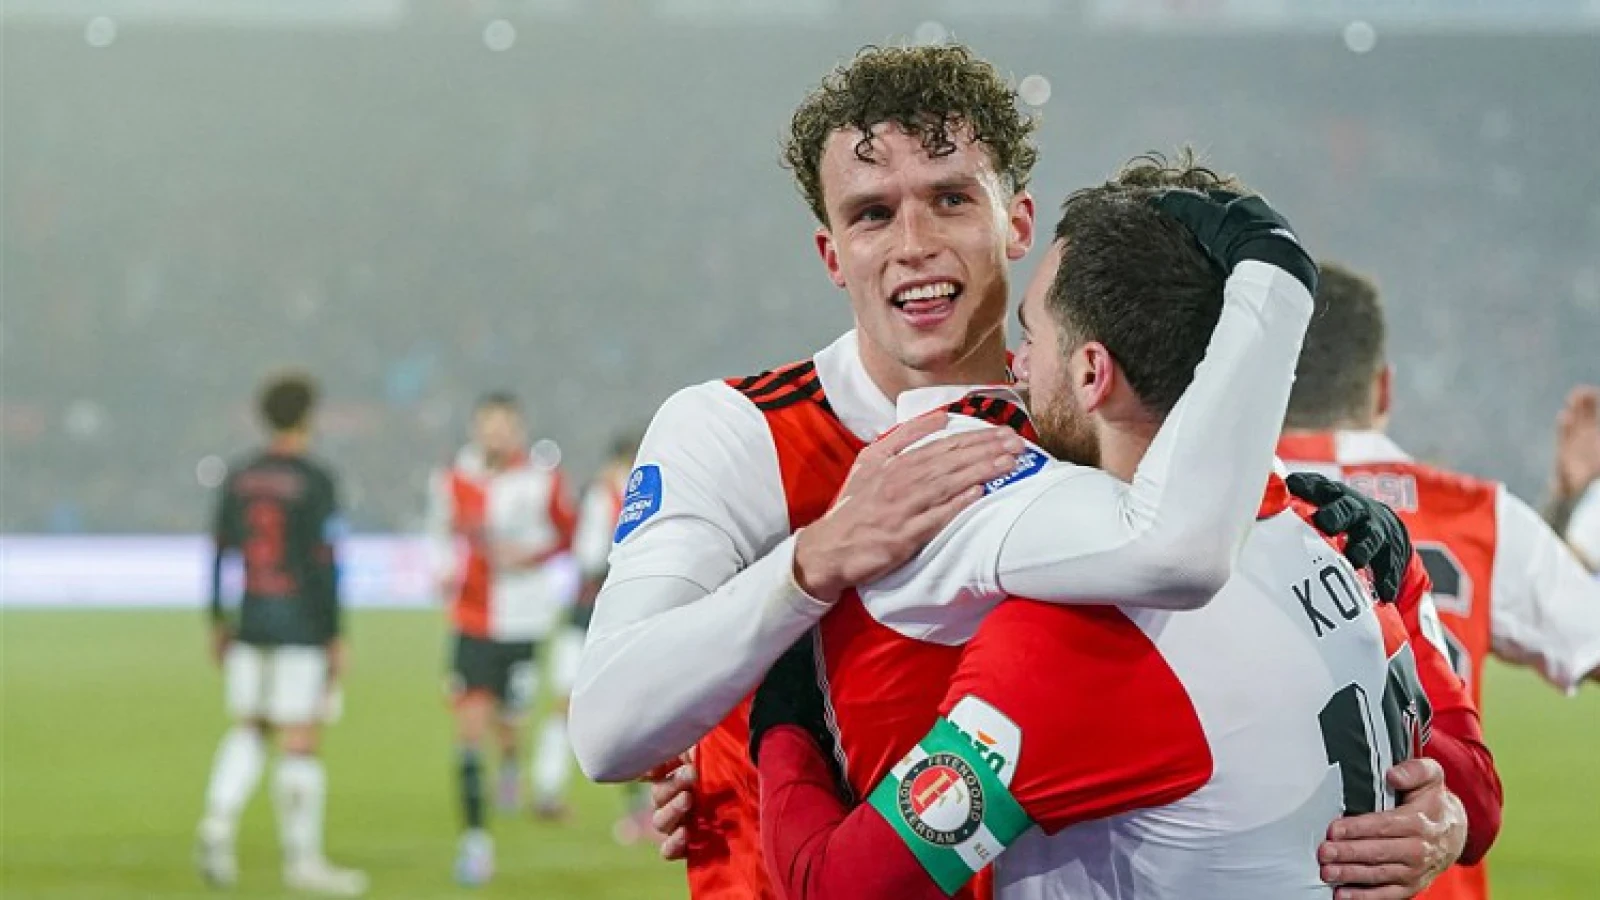 Doet Feyenoord goede zaken in de topper tegen FC Twente?